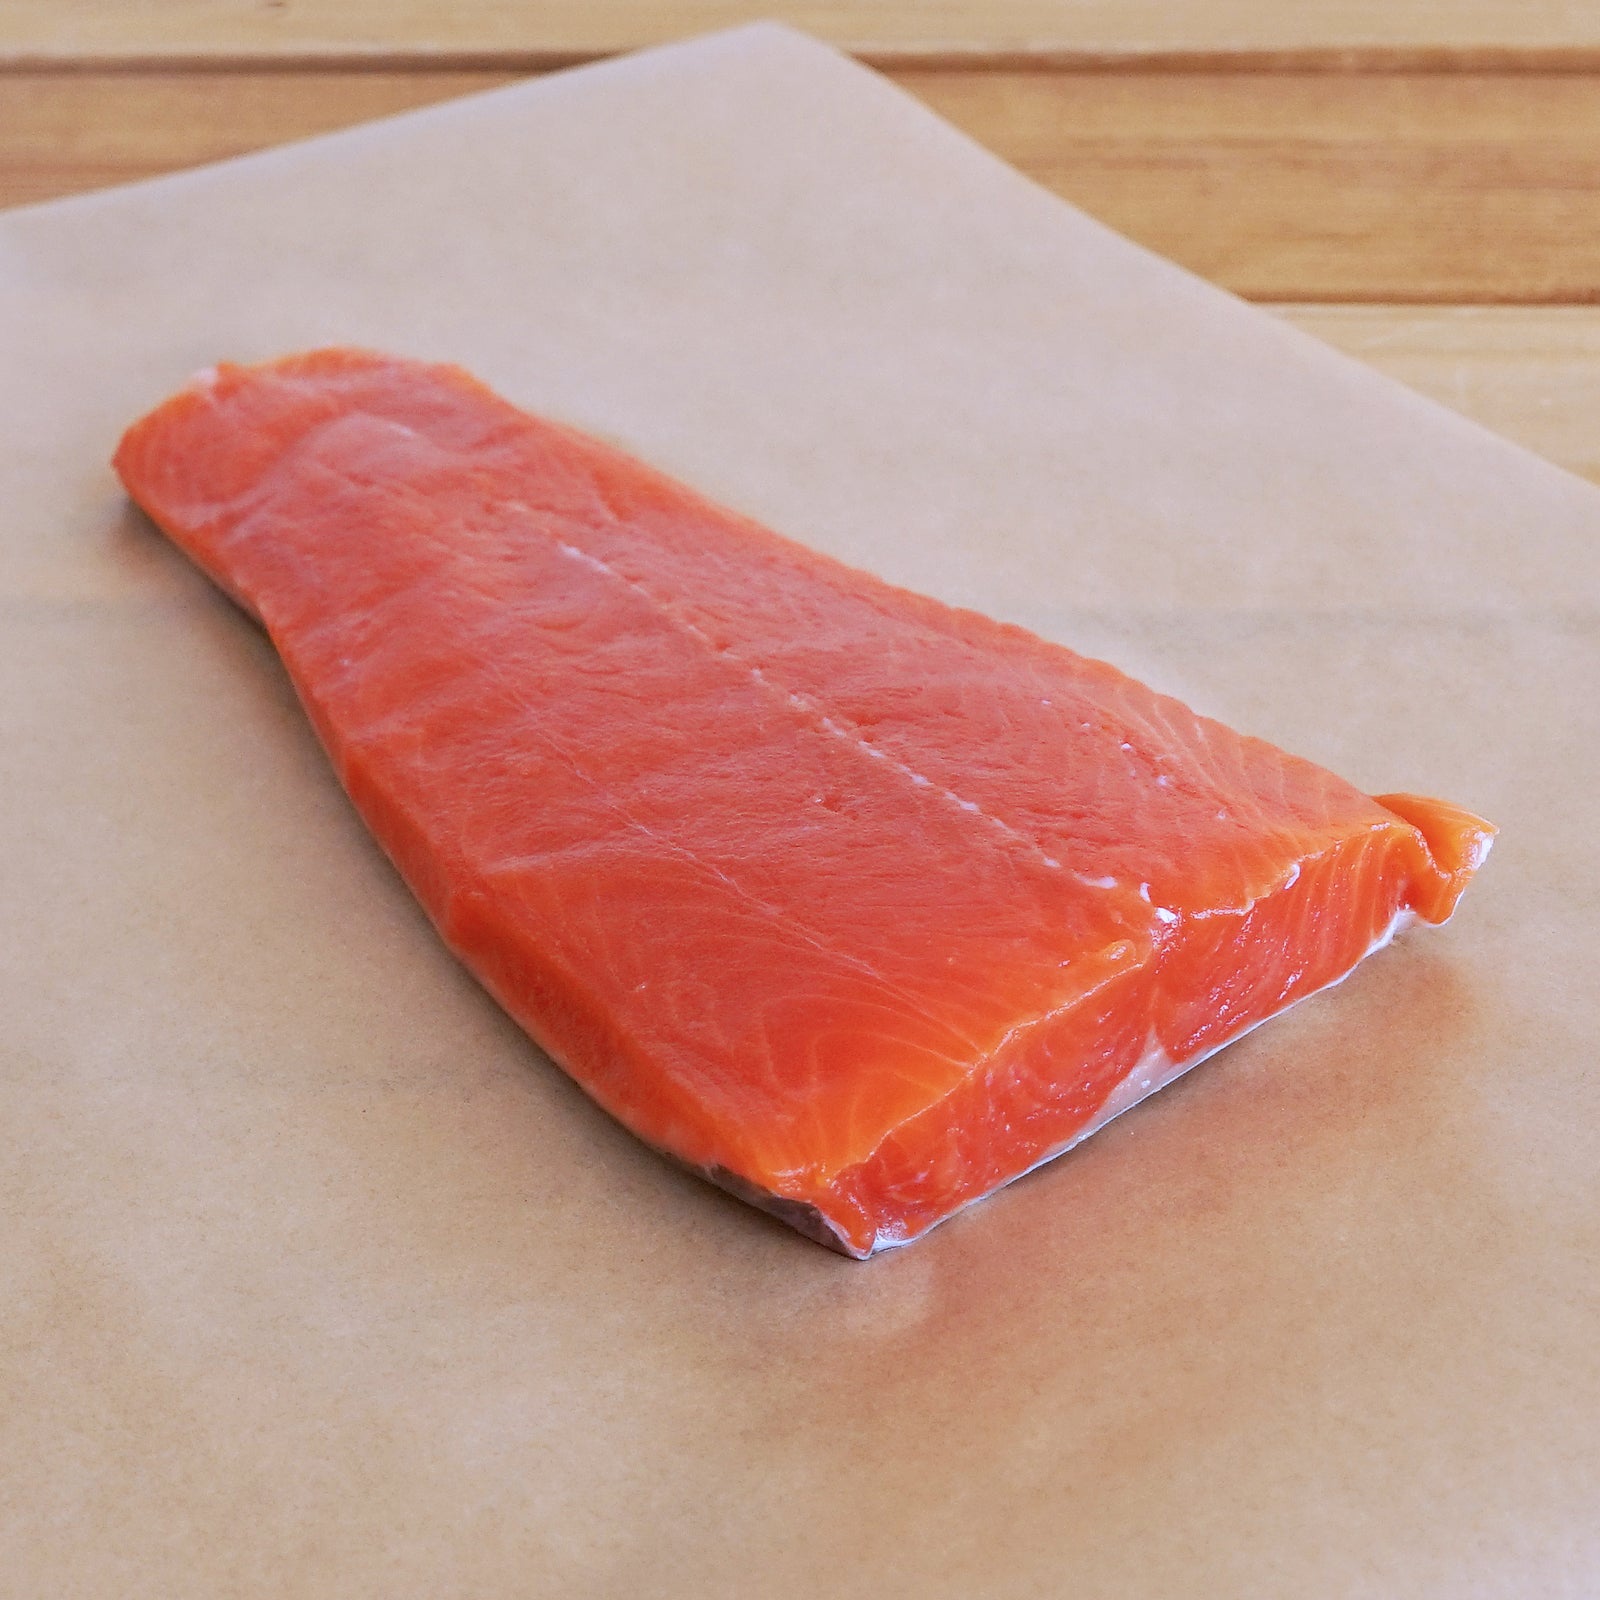 天然 高級 紅鮭 サーモン 切身 カナダ産 (200g) - ホライズンファームズ